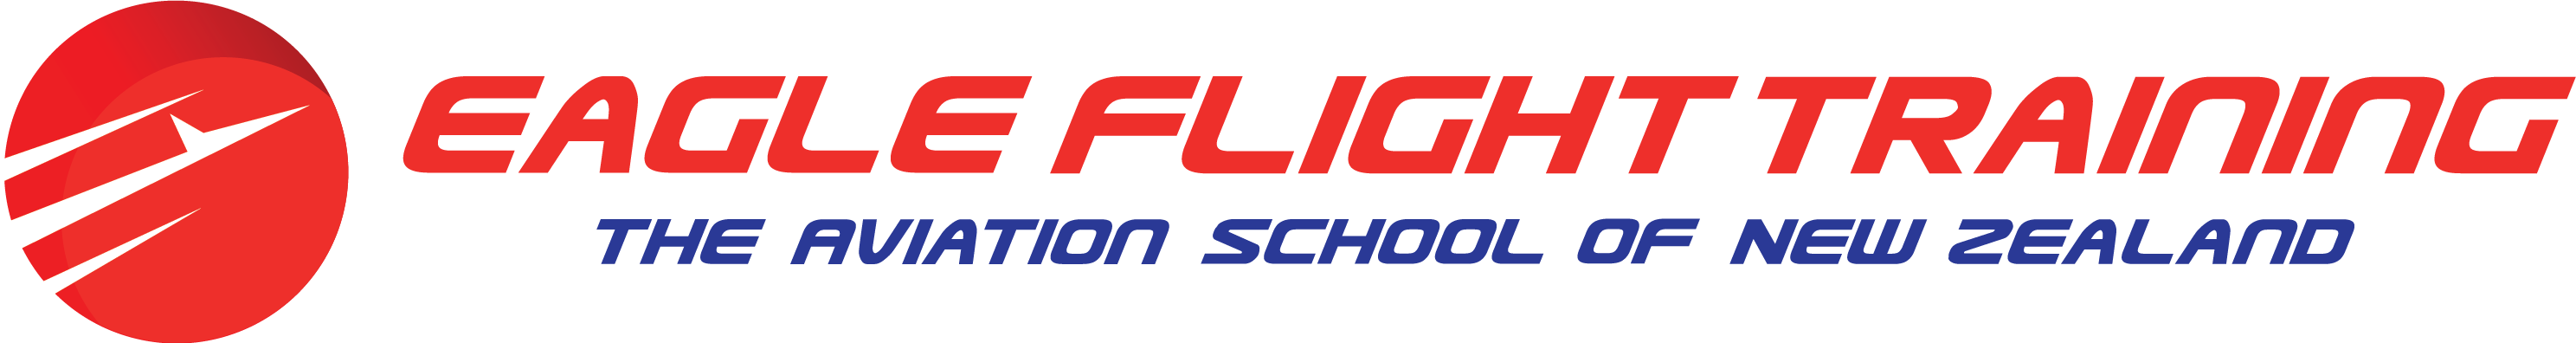 Eagle Flight Training | New Zealand